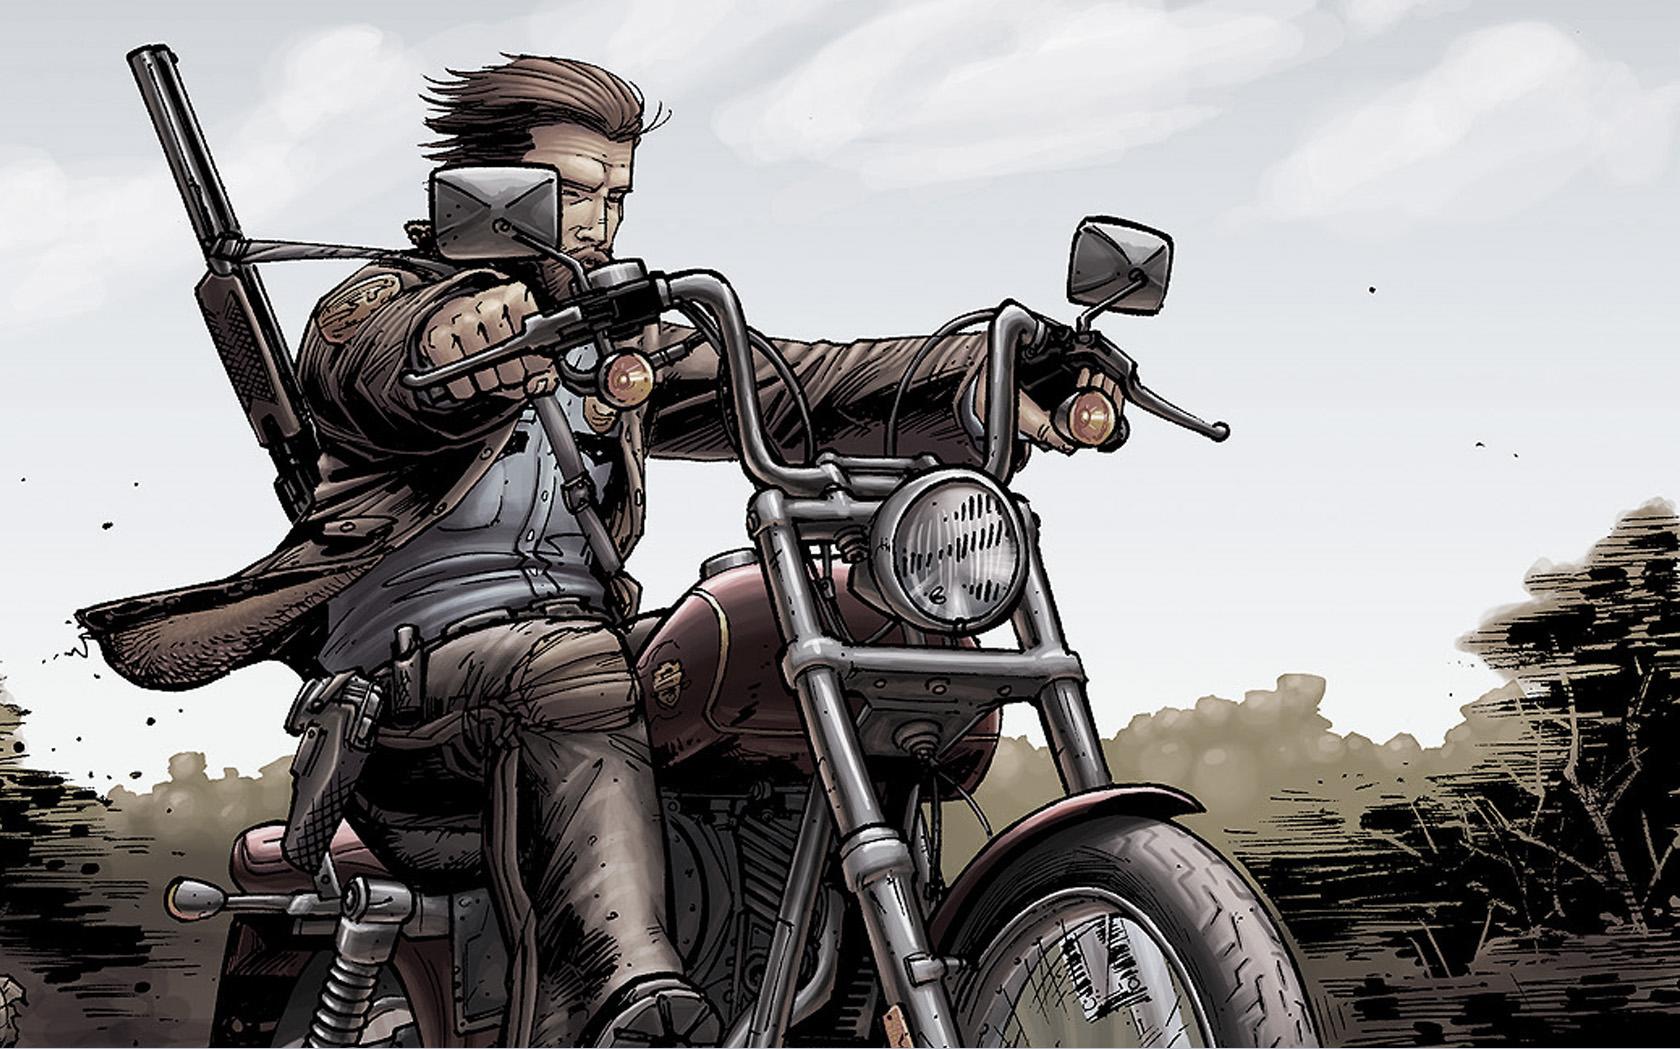 Wallpaper - Walking Dead Comic Motorbike - HD Wallpaper 